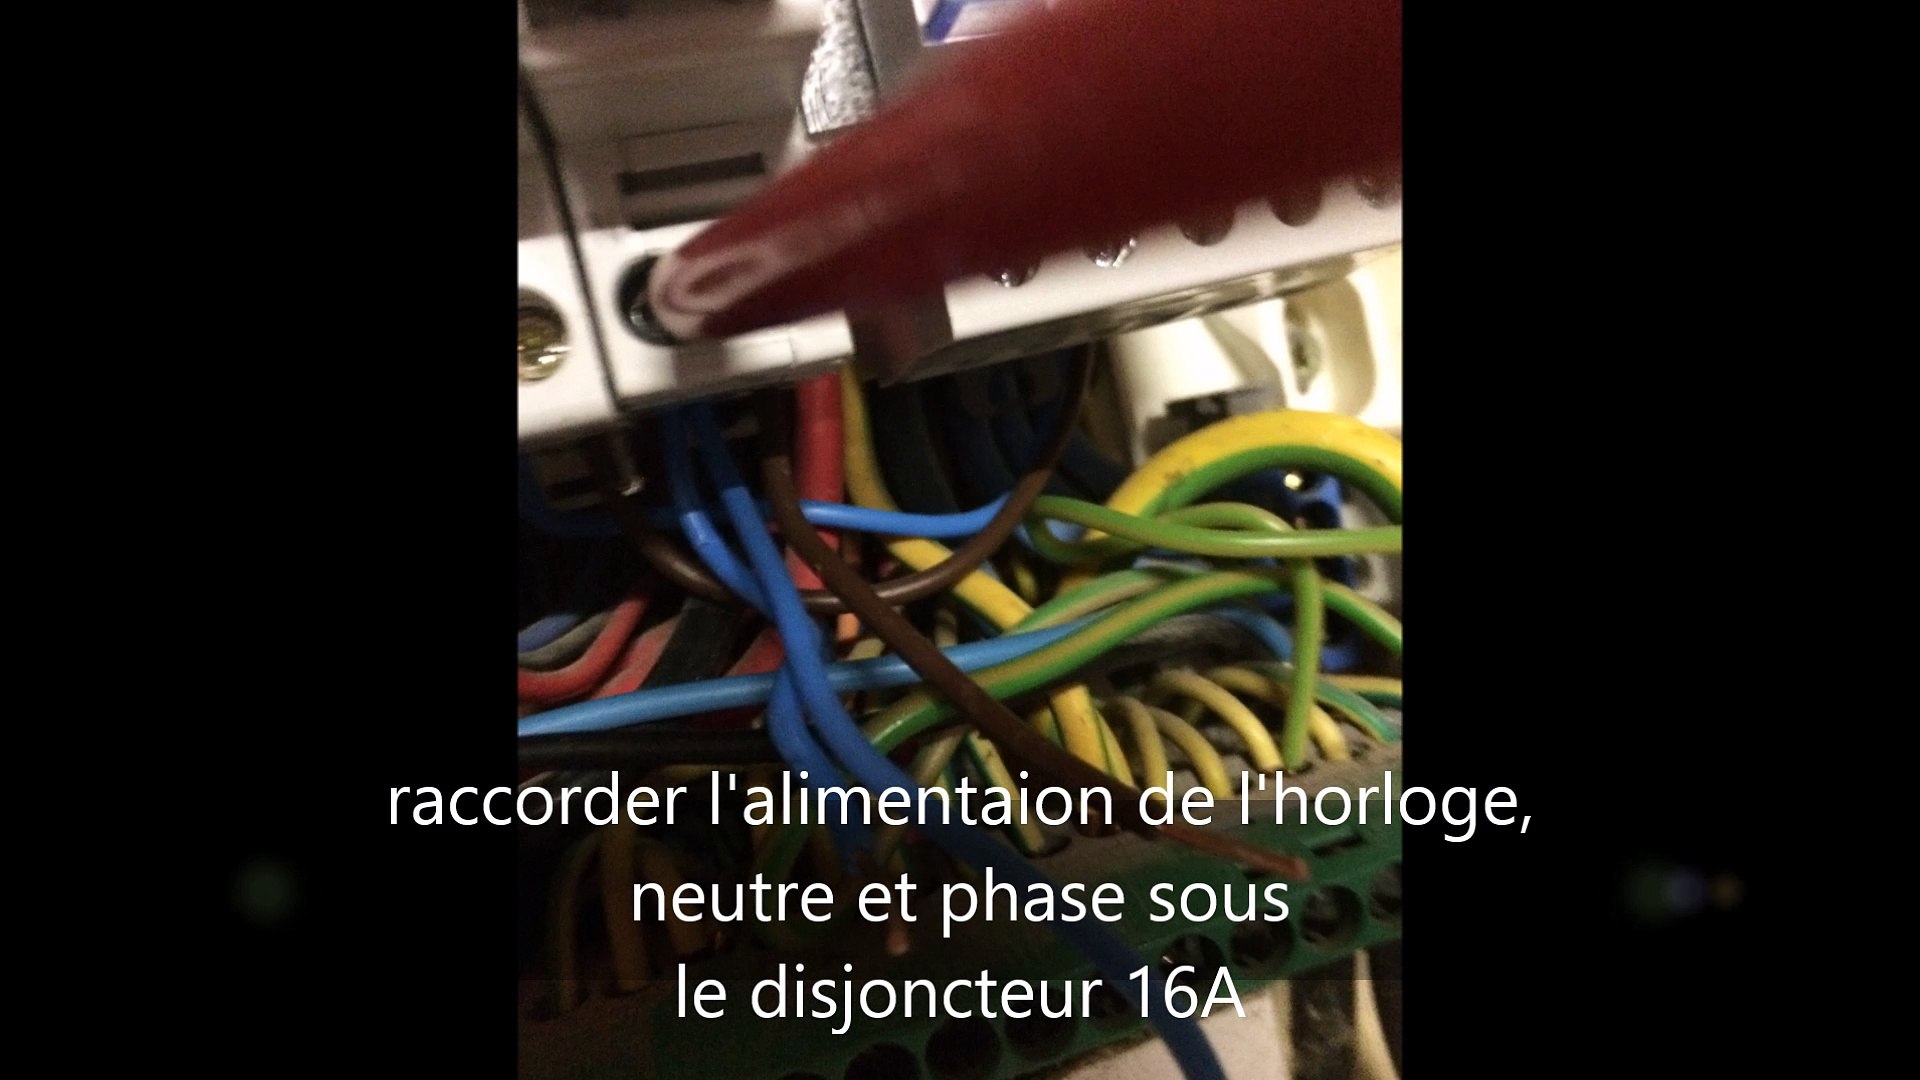 Comment changer la résistance d'un chauffe-eau (Ooreka.fr) - Vidéo  Dailymotion